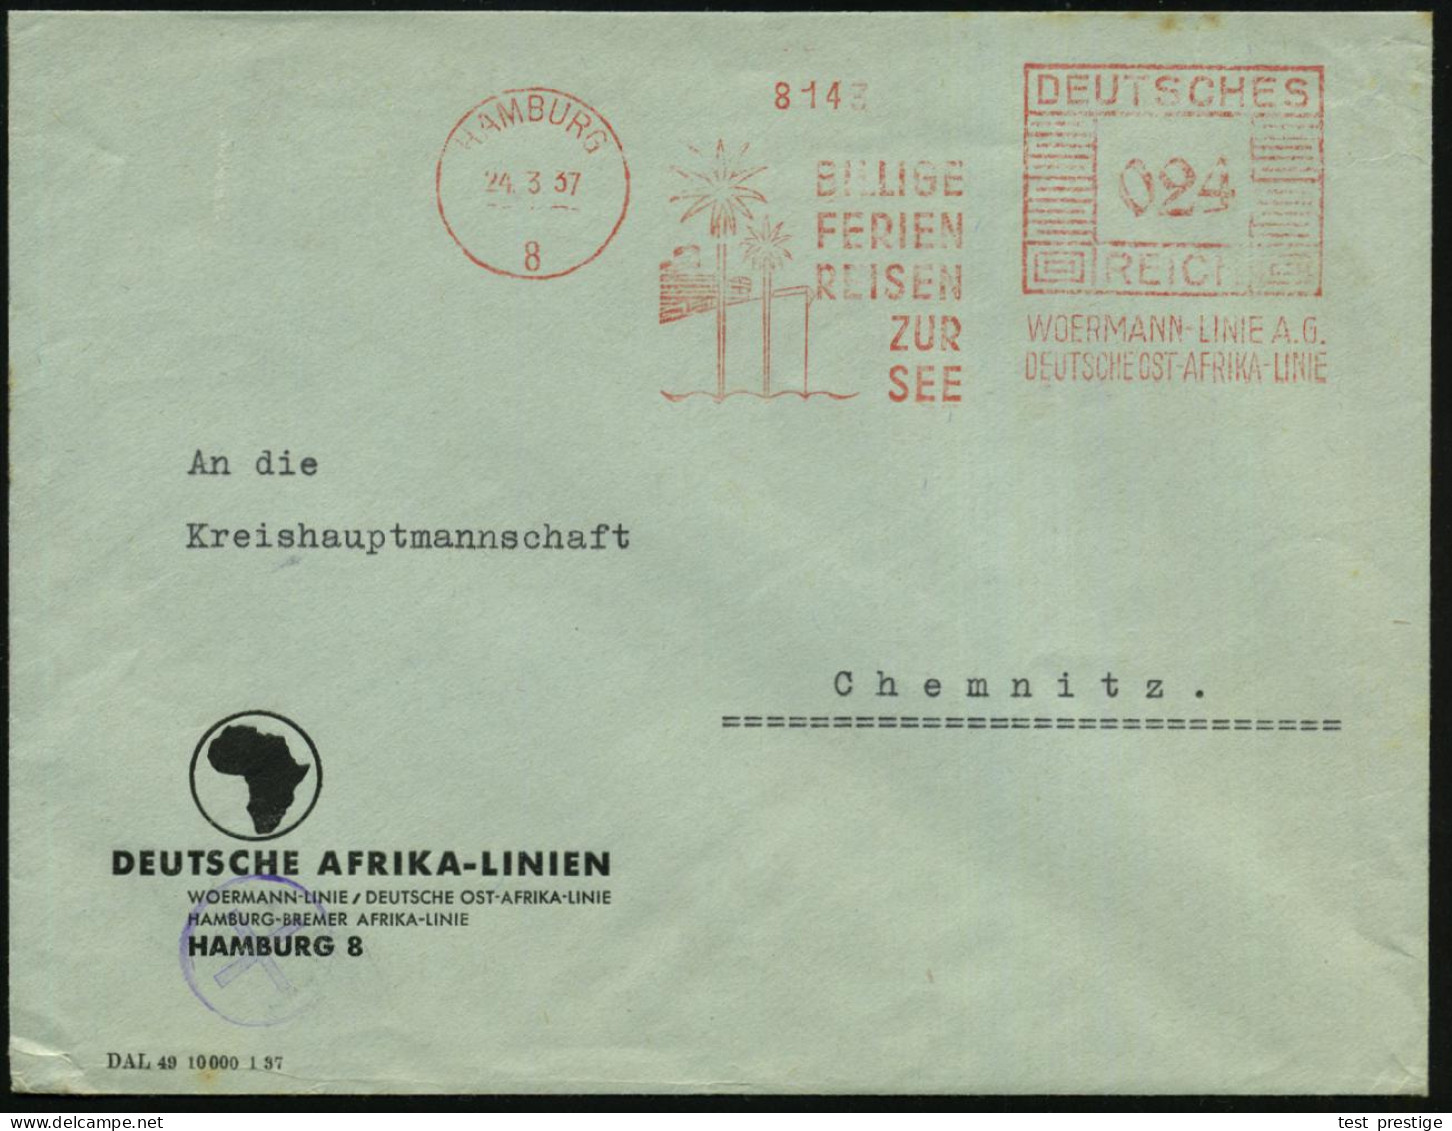 HAMBURG/ 8/ BILLIGE/ FERIEN/ REISEN/ ZUR/ SEE/ WOERMANN-LINIE AG/ DT.AFRIKA-LINIE 1937 (24.3.) AFS Francotyp = Palmen Vo - Schiffahrt